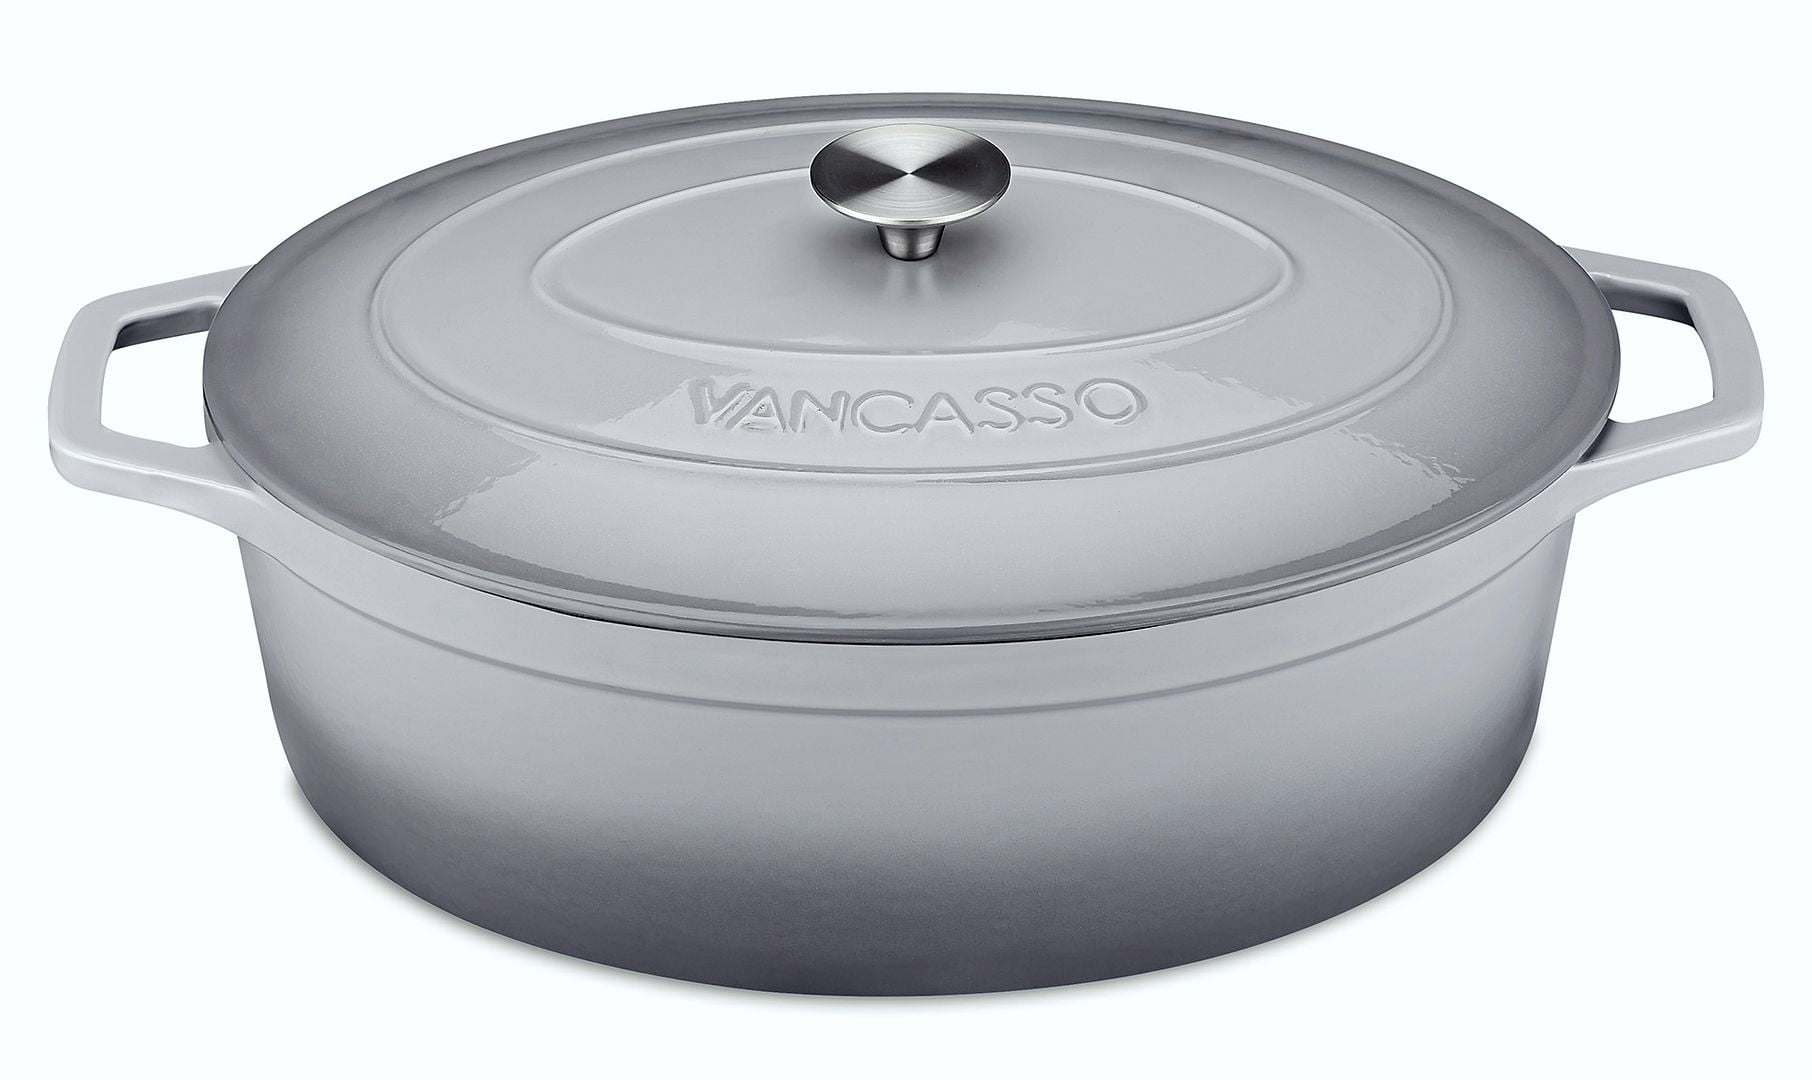 vancasso 6 Qt. Enameled Cast Iron Dutch Oven - On Sale - Bed Bath & Beyond  - 35109444